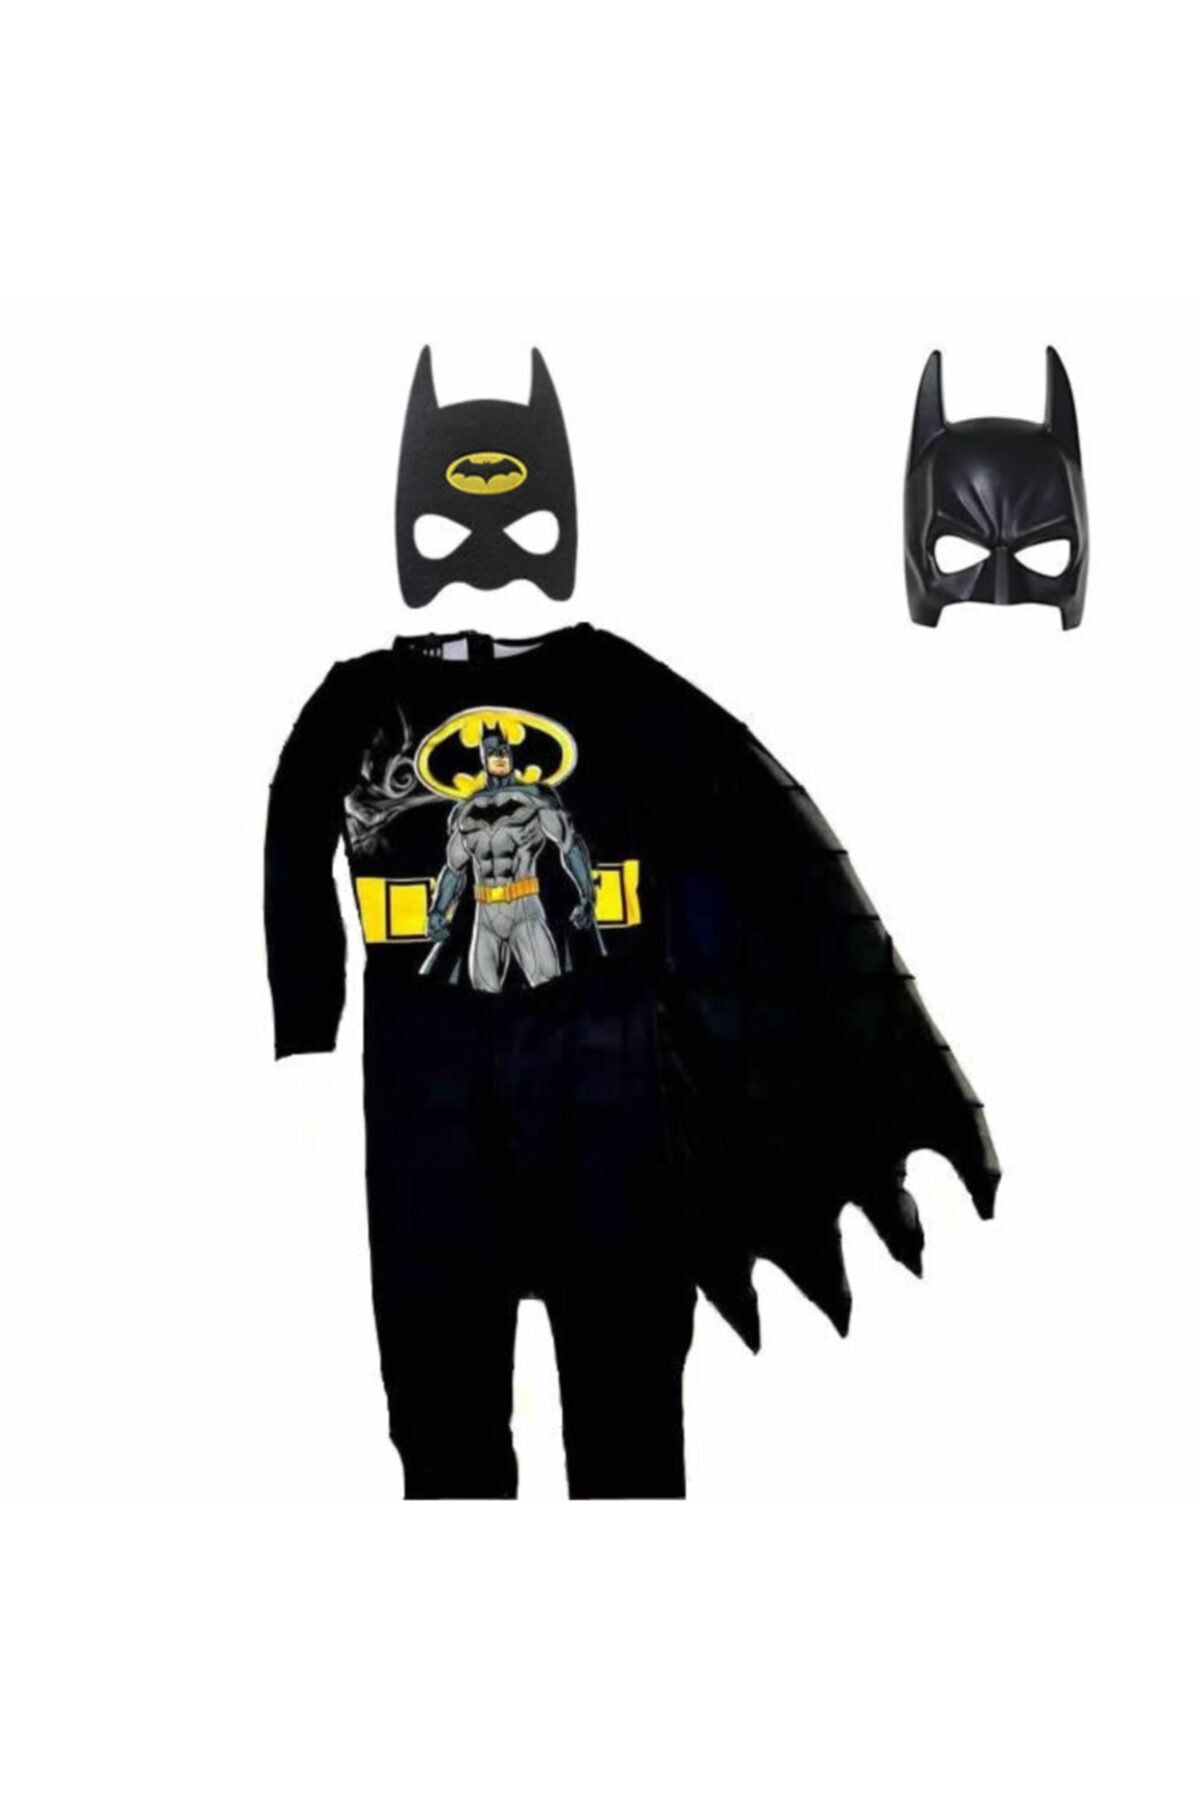 Batman Baskılı Çocuk Kostümü Pelerinli Ve Maskeli Yarasa Adam Kostümü 2 Maskeli